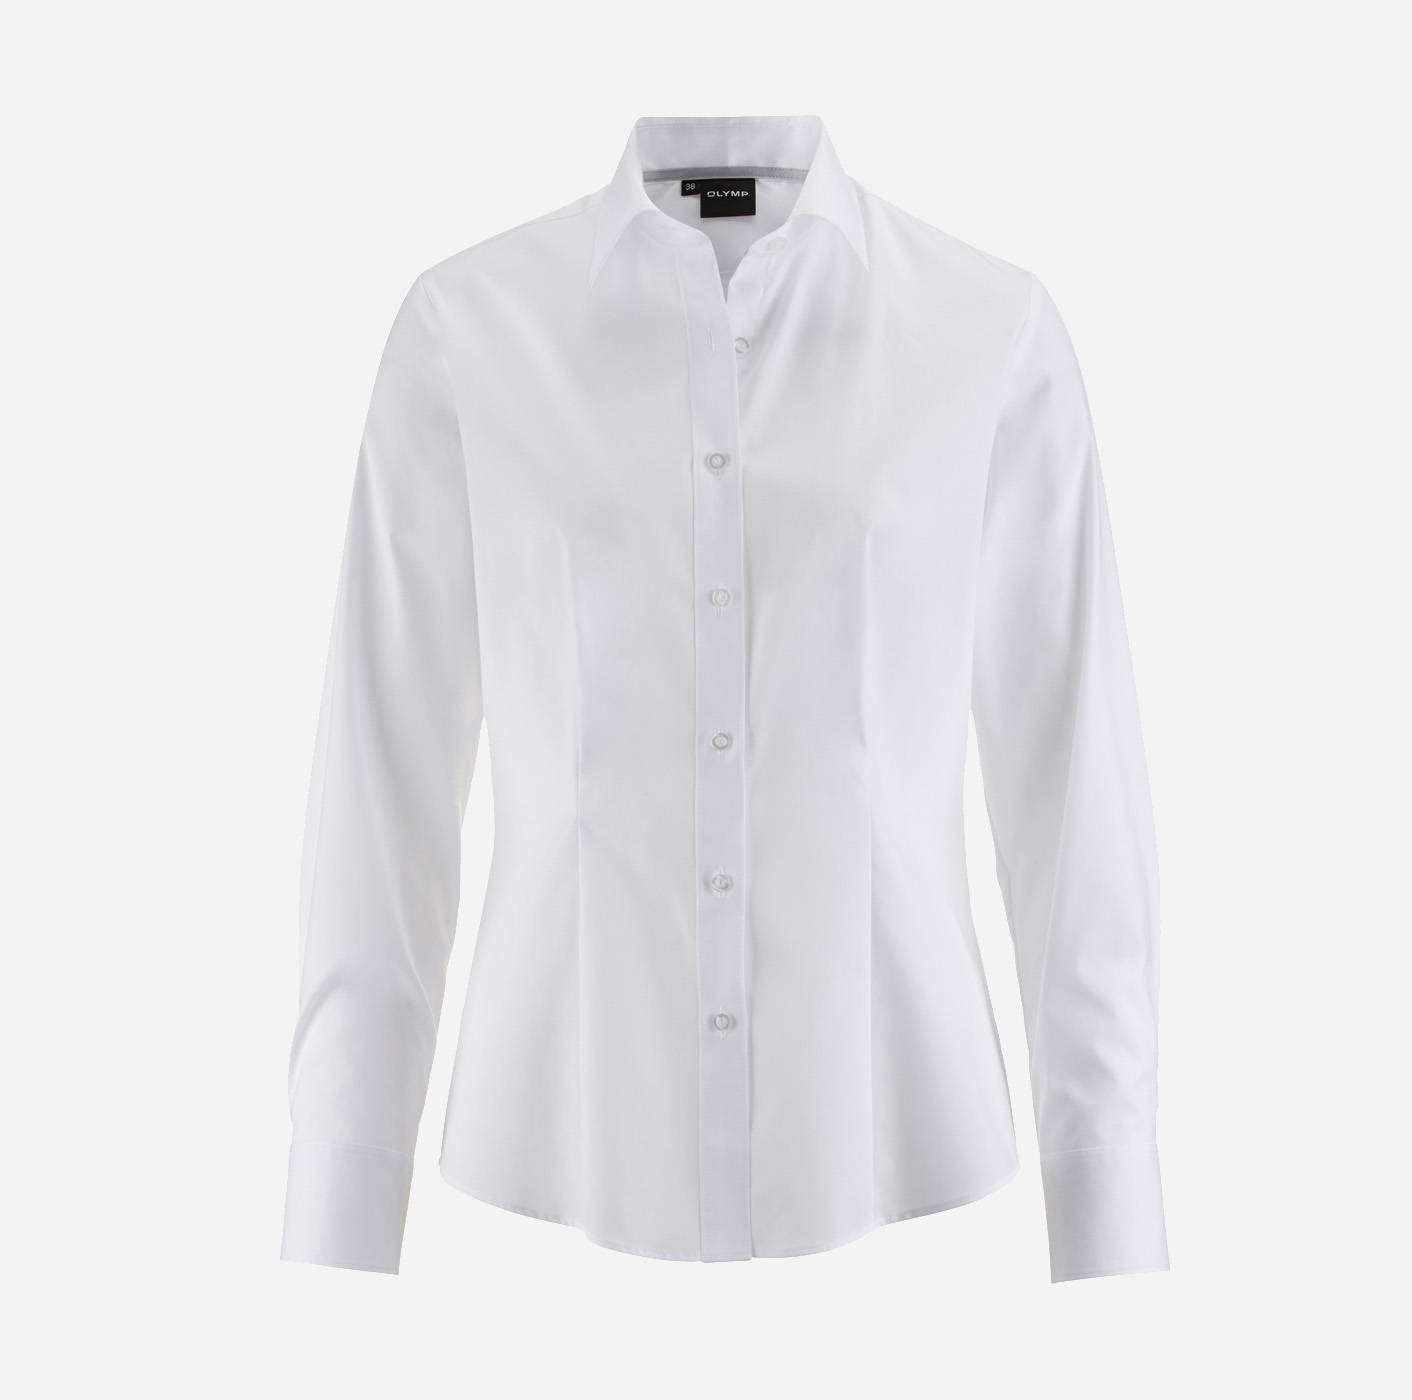 Langarm-Bluse OLYMP Five fit, weiß - Logo mit Level bestickt body